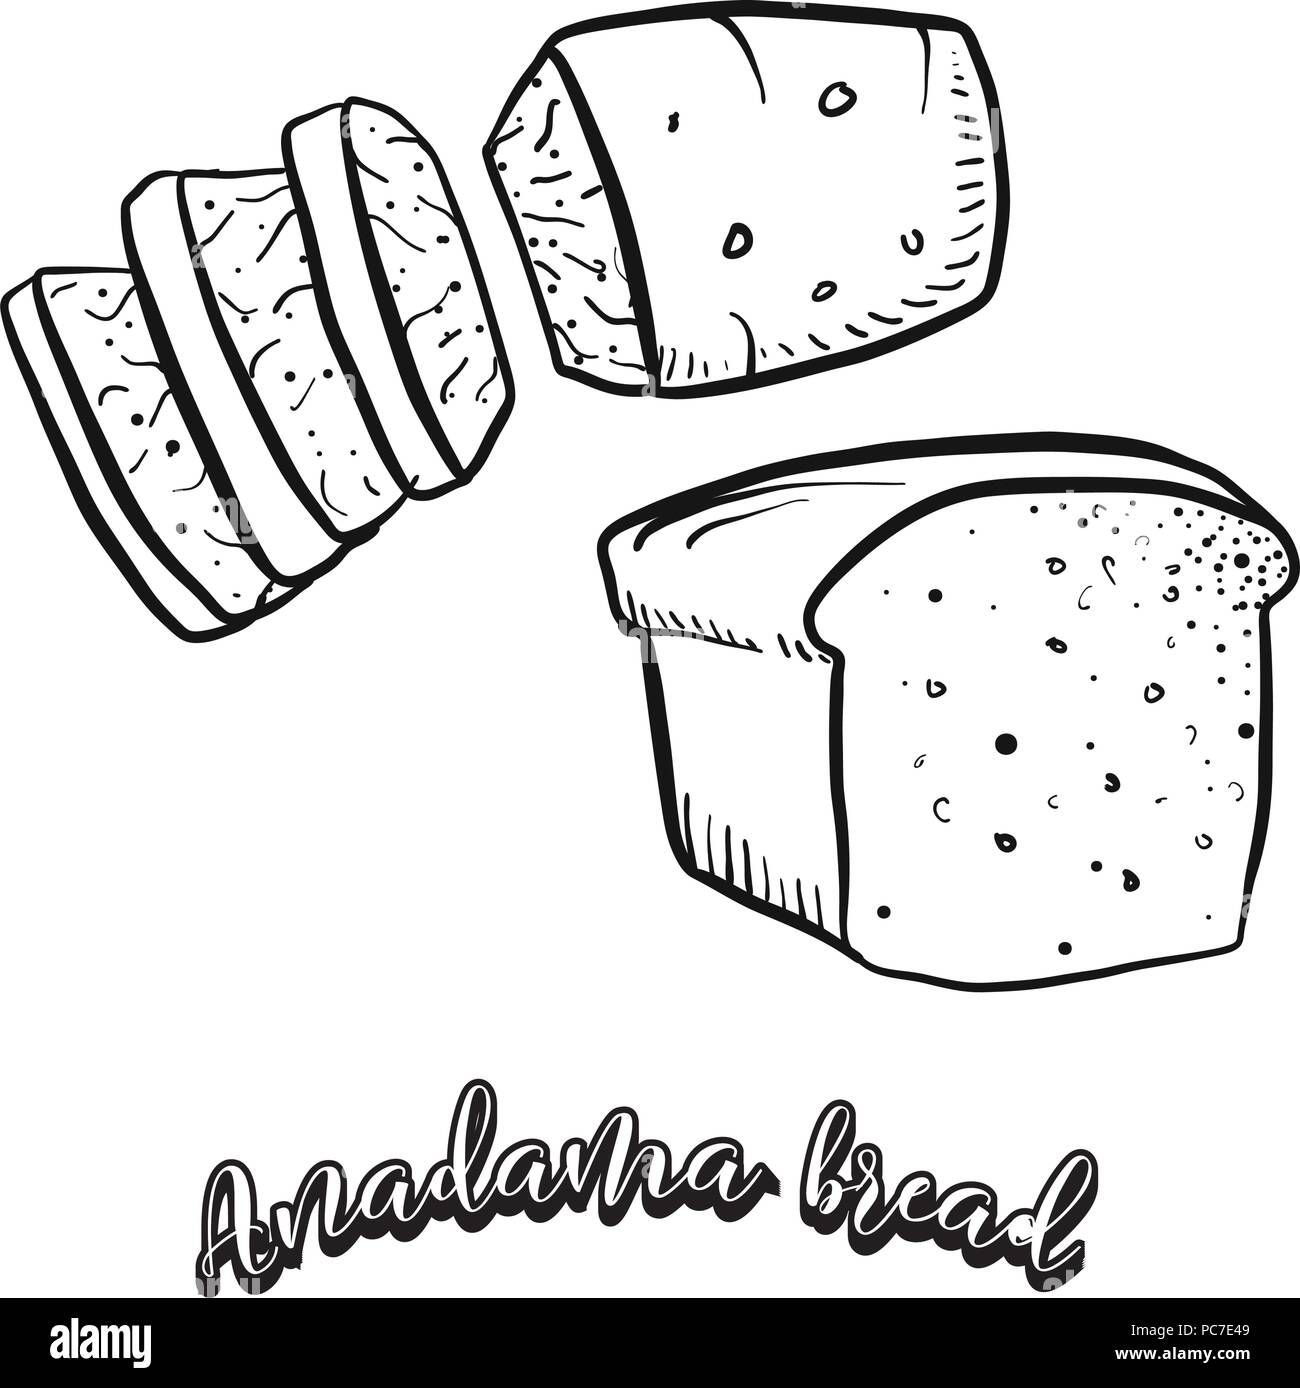 Croquis dessinés à la main de pain d'Anadama la nourriture. Dessin vectoriel de la levure alimentaire pain, habituellement connu dans United States, New England. Illustration du pain series. Illustration de Vecteur